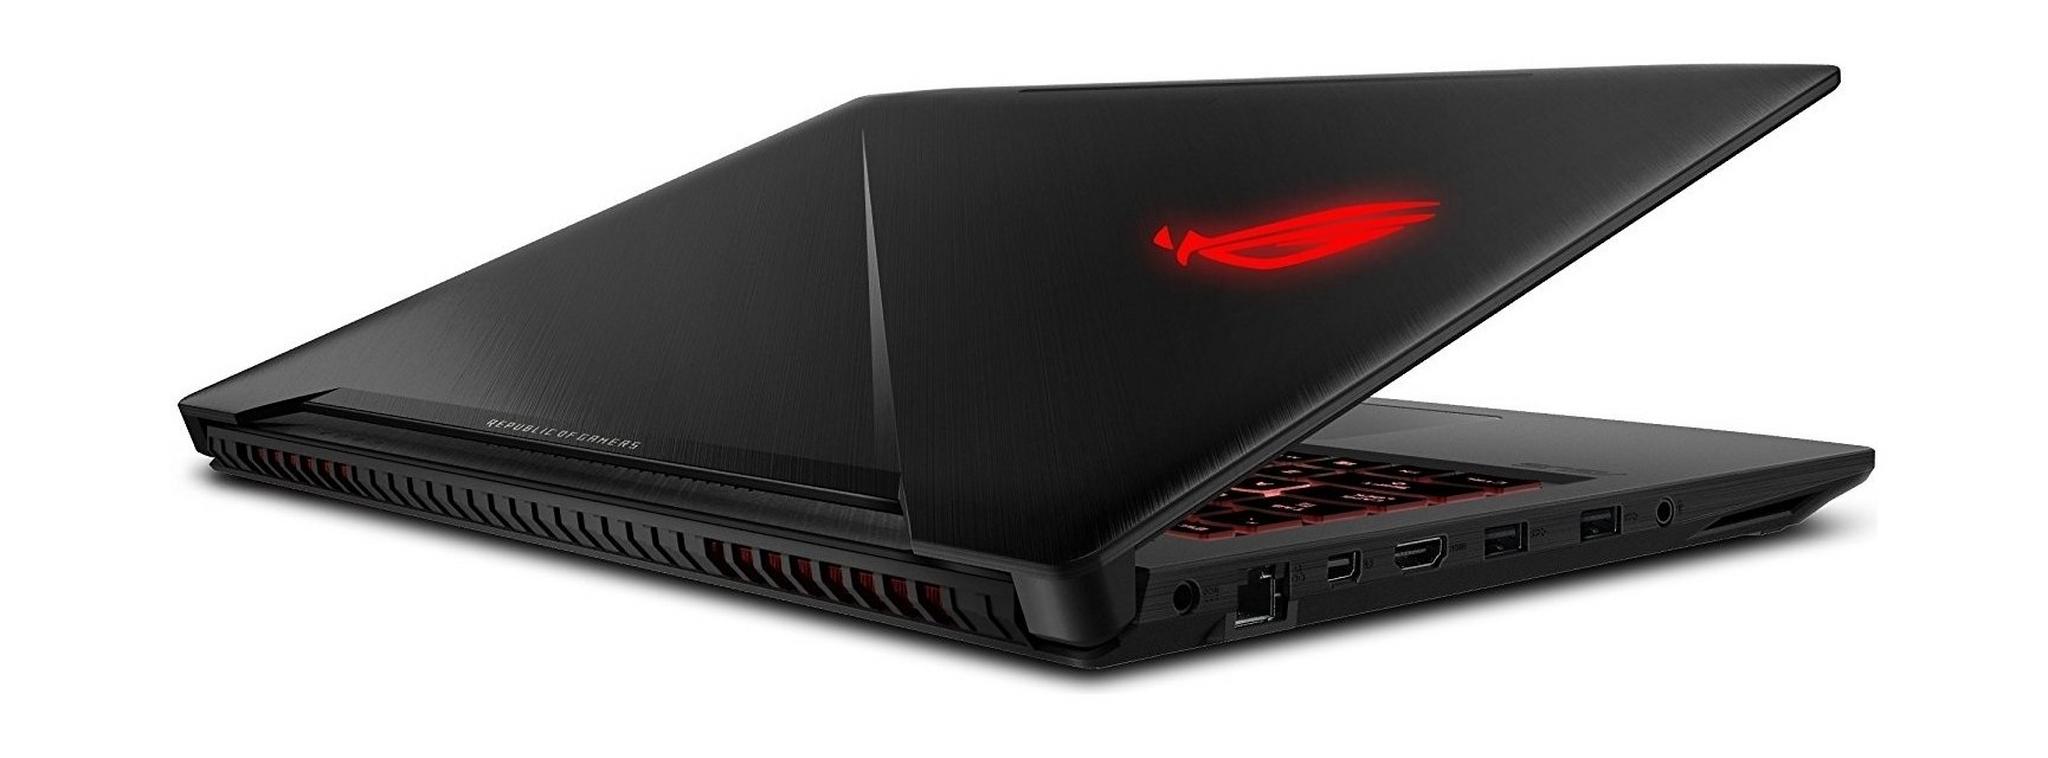 ASUS ROG Strix Scar Edition GeForce GTX 1060 6GB Core i7 24GB RAM 1TB HDD + 512 SSD 17.3 inch Gaming Laptop (GL703VM) - Black